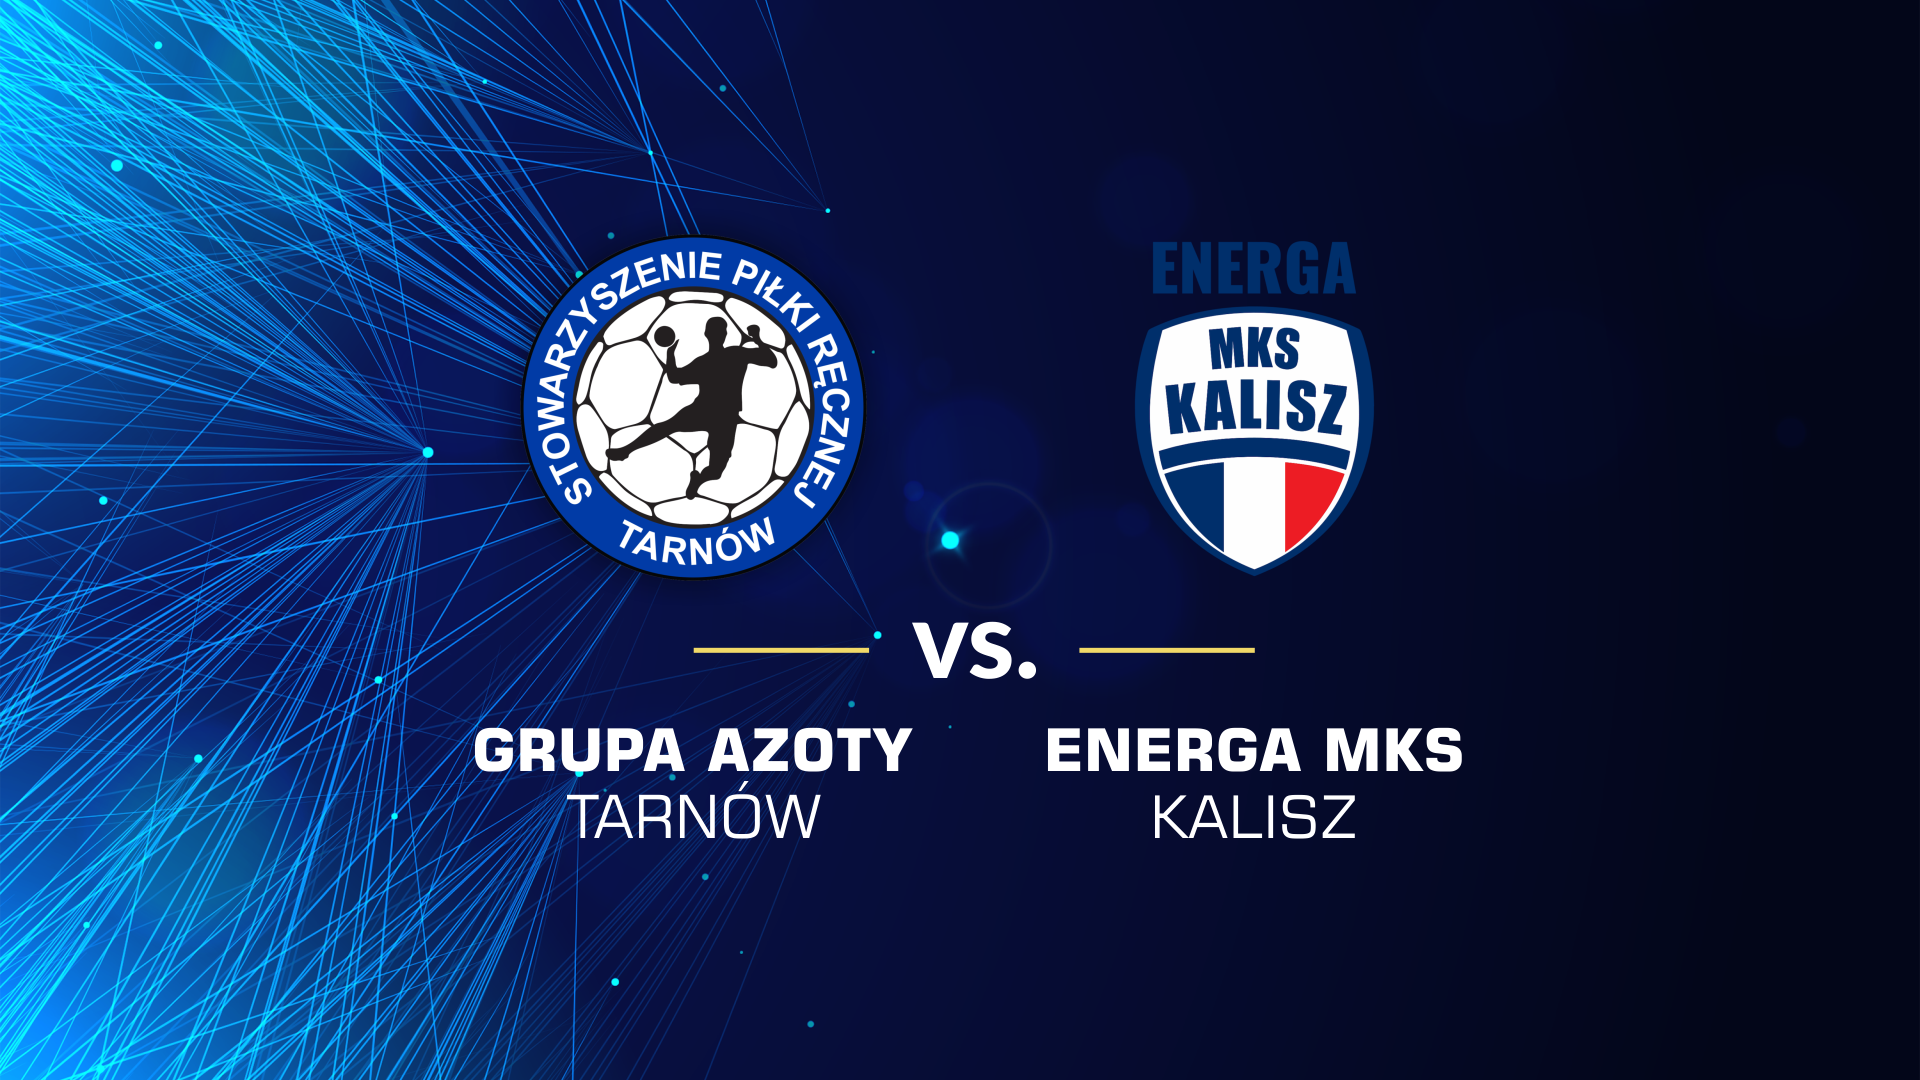 baner promujący mecz z Energą MKS Kalisz